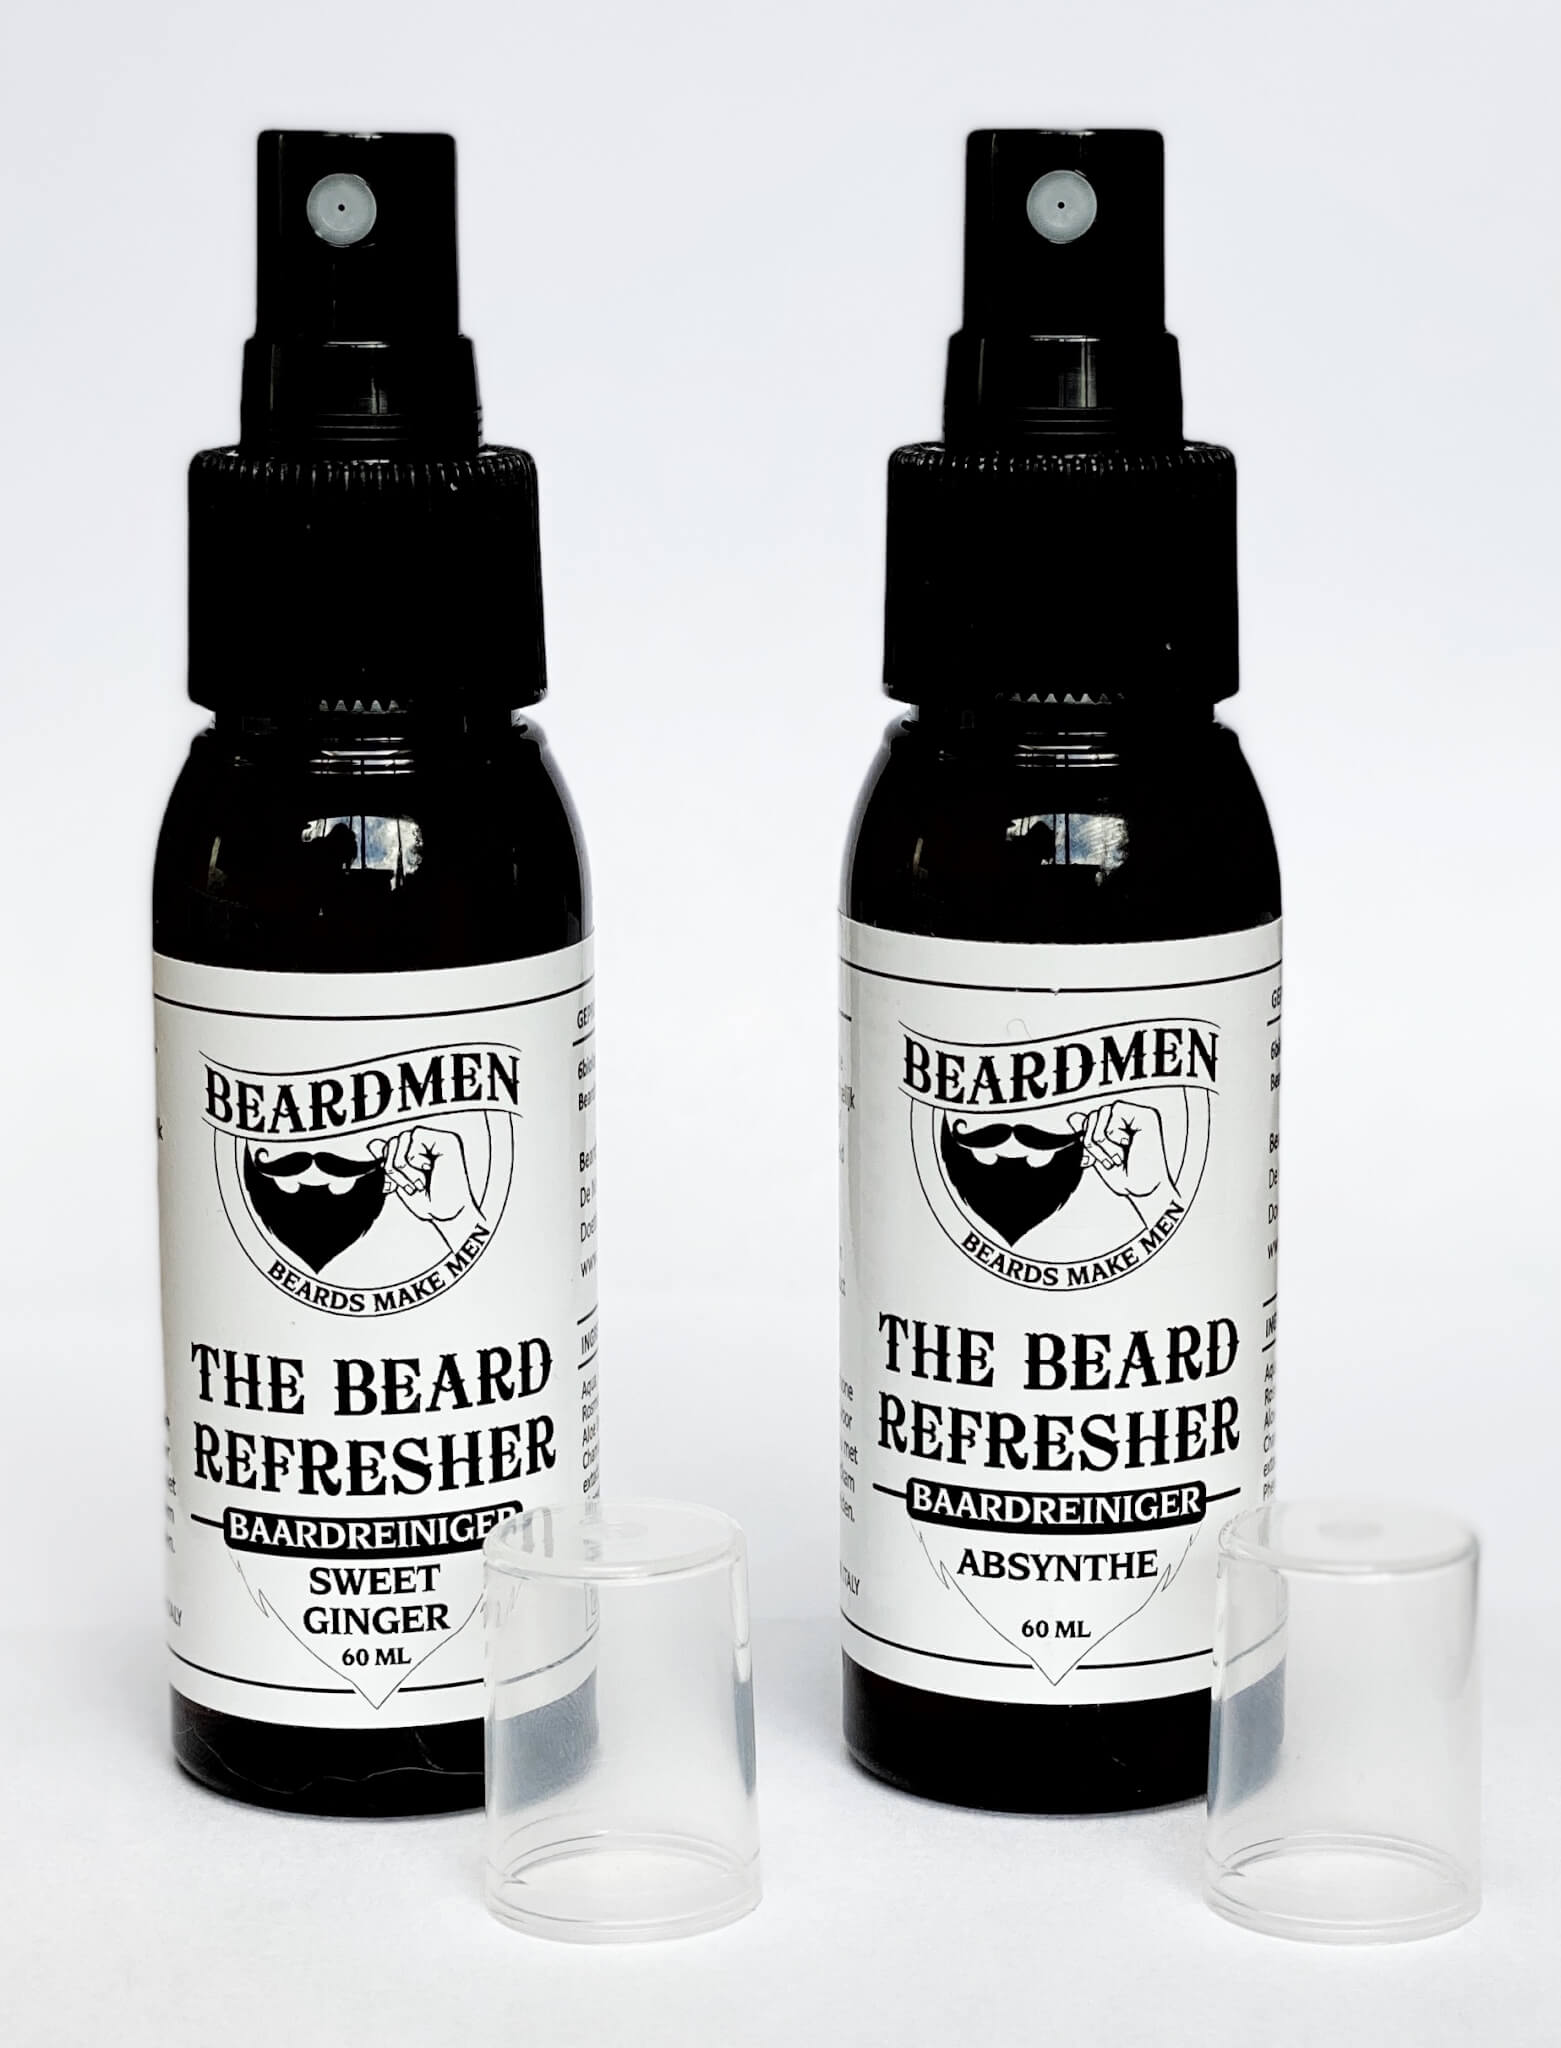 The Beard Refresher / baardreiniger van Beardmen B4men Webshop Flacon van beide geuren